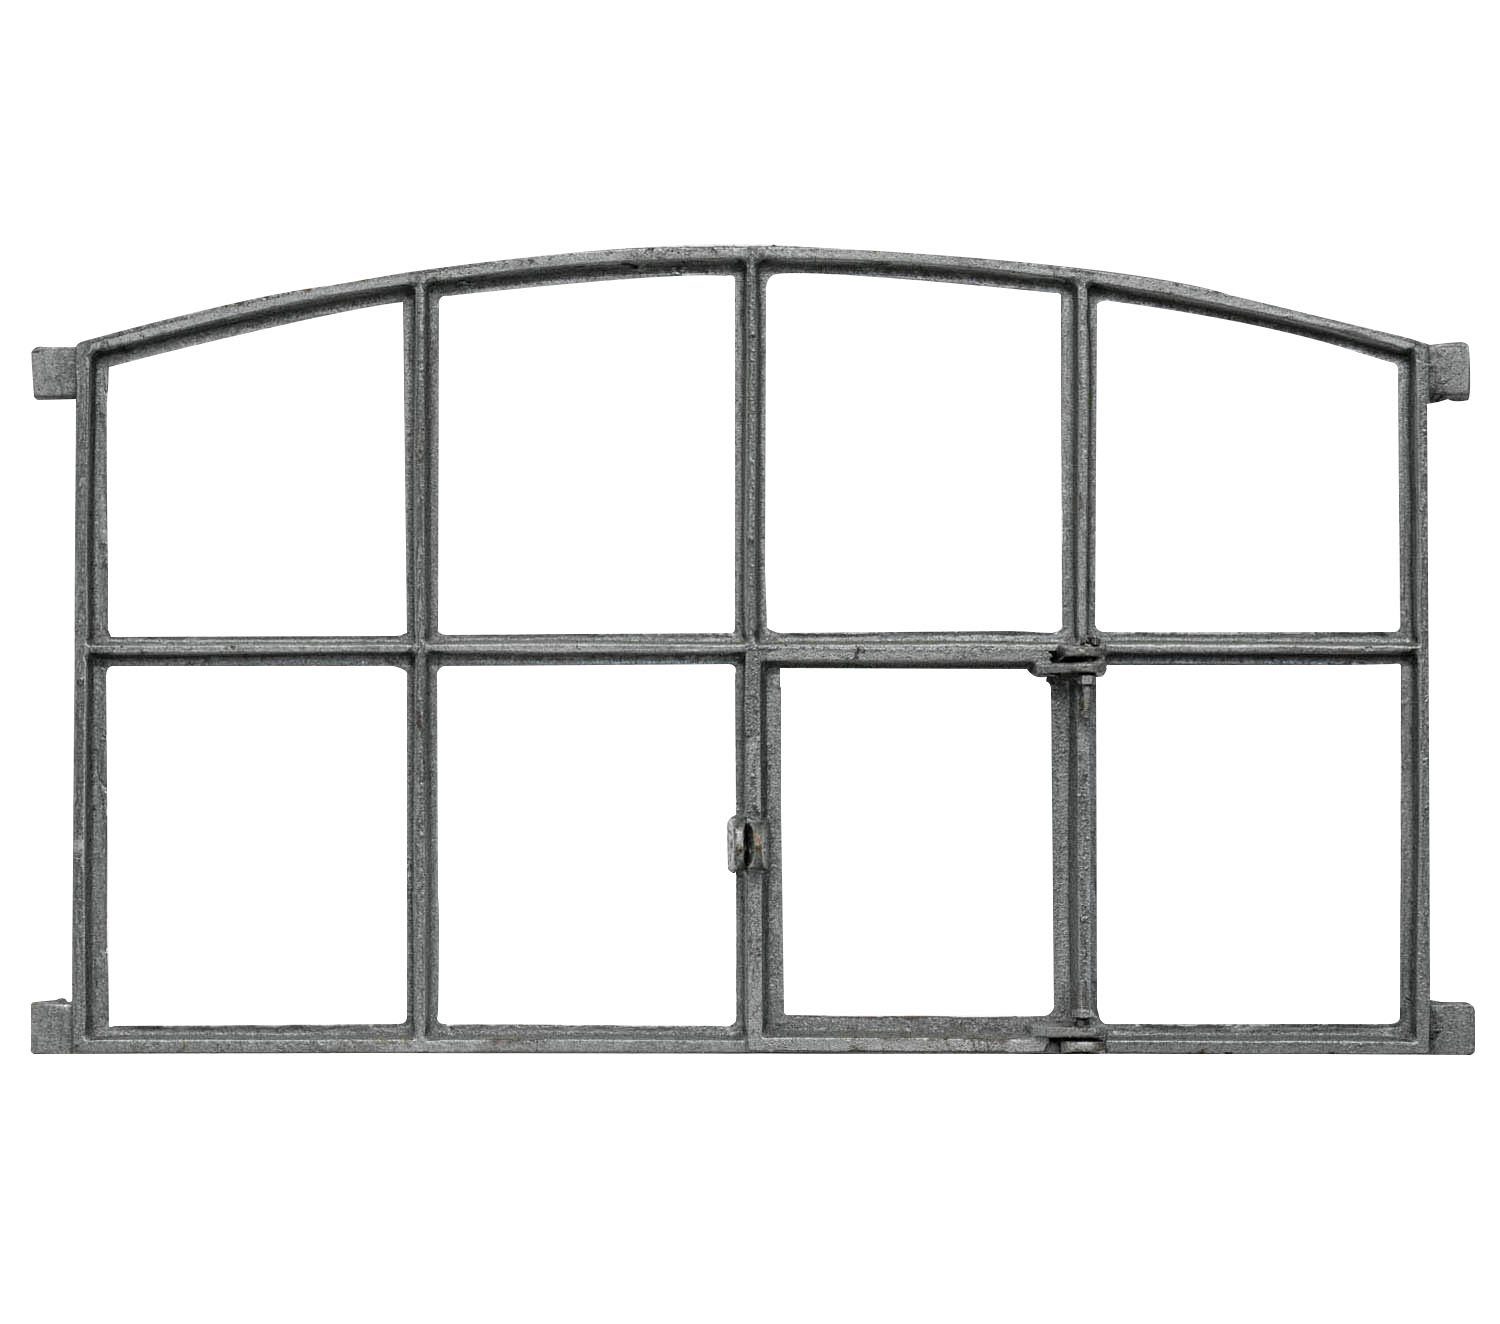 Aubaho Fenster Fenster zum Eisenfenster Klappfenster Eisen A 74cm Öffnen Stallfenster